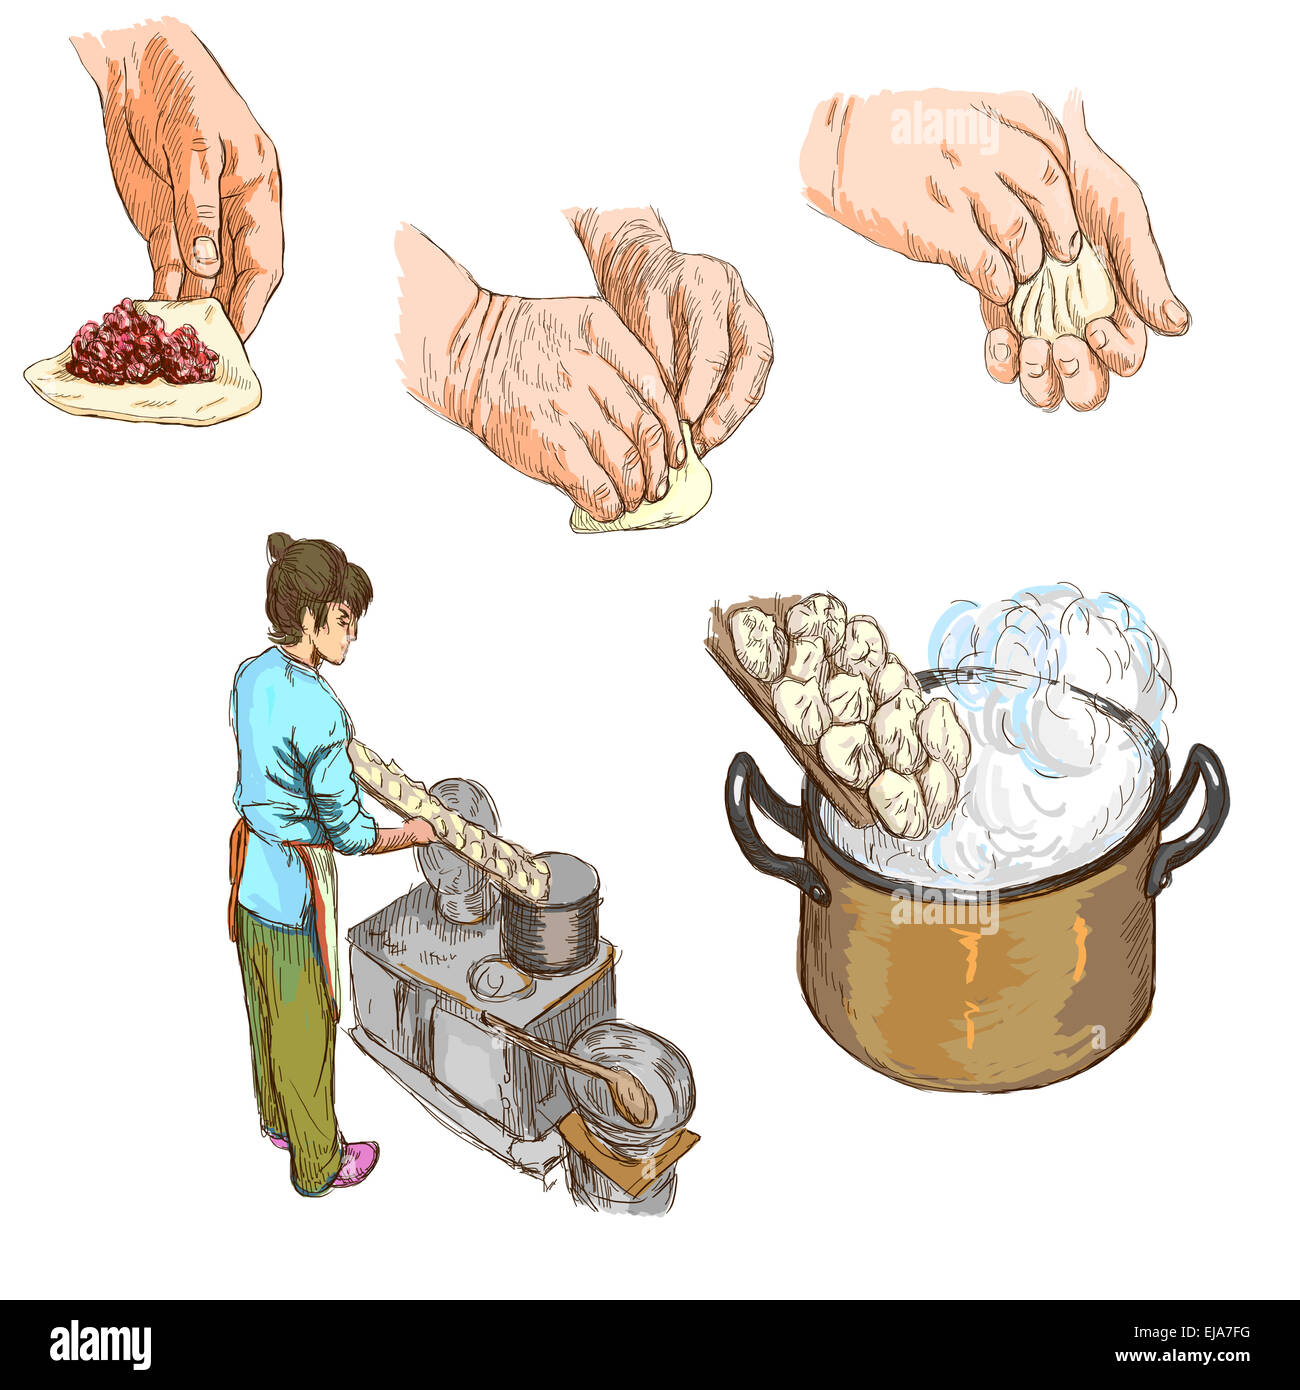 Aus der Serie: Speisen und Getränke - bereiten PASTA - Sammlung von einer Hand gezeichnete und farbigen Illustrationen. Beschreibung: Full-size Stockfoto